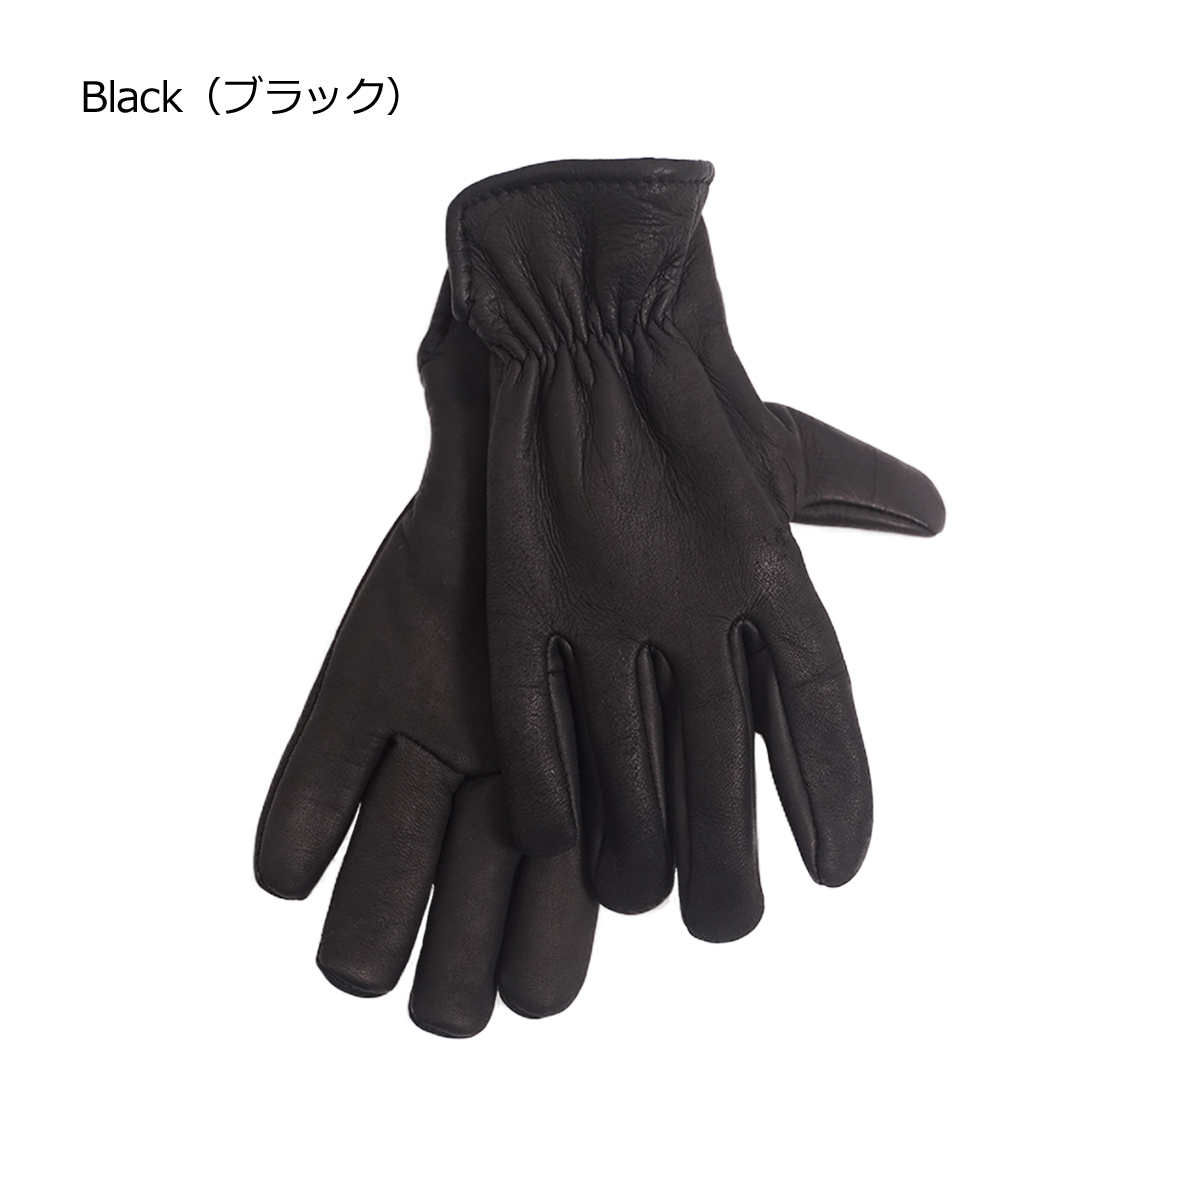 ガイヤーグローブ GEIER GLOVE #204ES ディアスキン レザーグローブ パイルライン 米国製 アメリカ製 Deerskin Glove  Pile Lined 革手袋